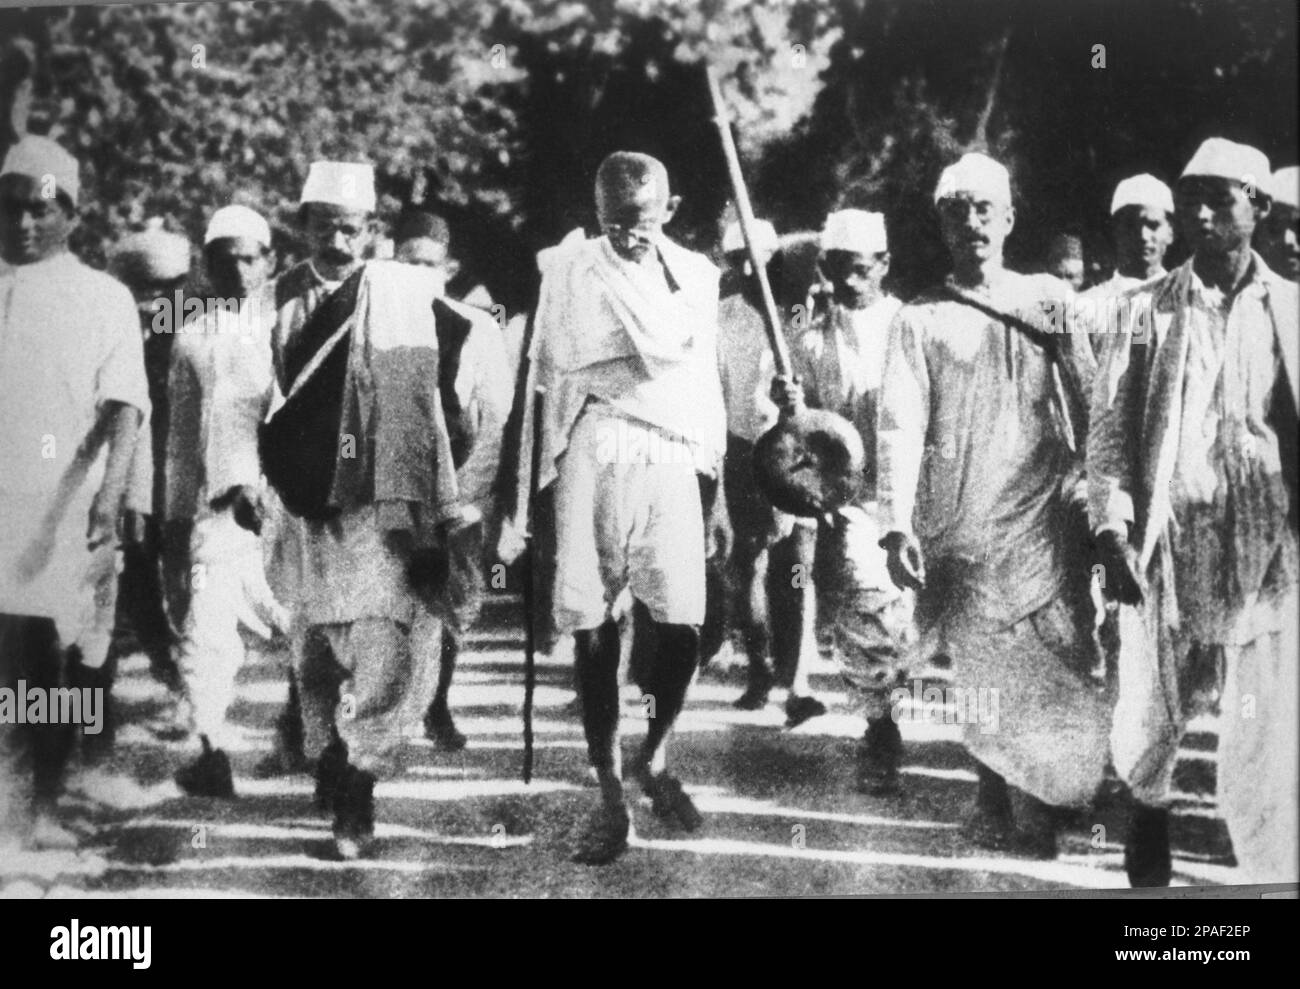 1930 : der pazifistische indische Führer MAHATMA GANDHI ( Mohandas Karamchand Gandhi , 1869 - 1948 ) war ein bedeutender politischer und spiritueller Führer Indiens und der indischen Unabhängigkeitsbewegung. Gandhi während des Salzmarschs, März 1930 - POLITIKER - POLITIK - POLITIK - PAZIFISMUS - PAZIFIST - PACIFISTA - PACIFISMO - INDIEN ---- ARCHIVIO GBB Stockfoto